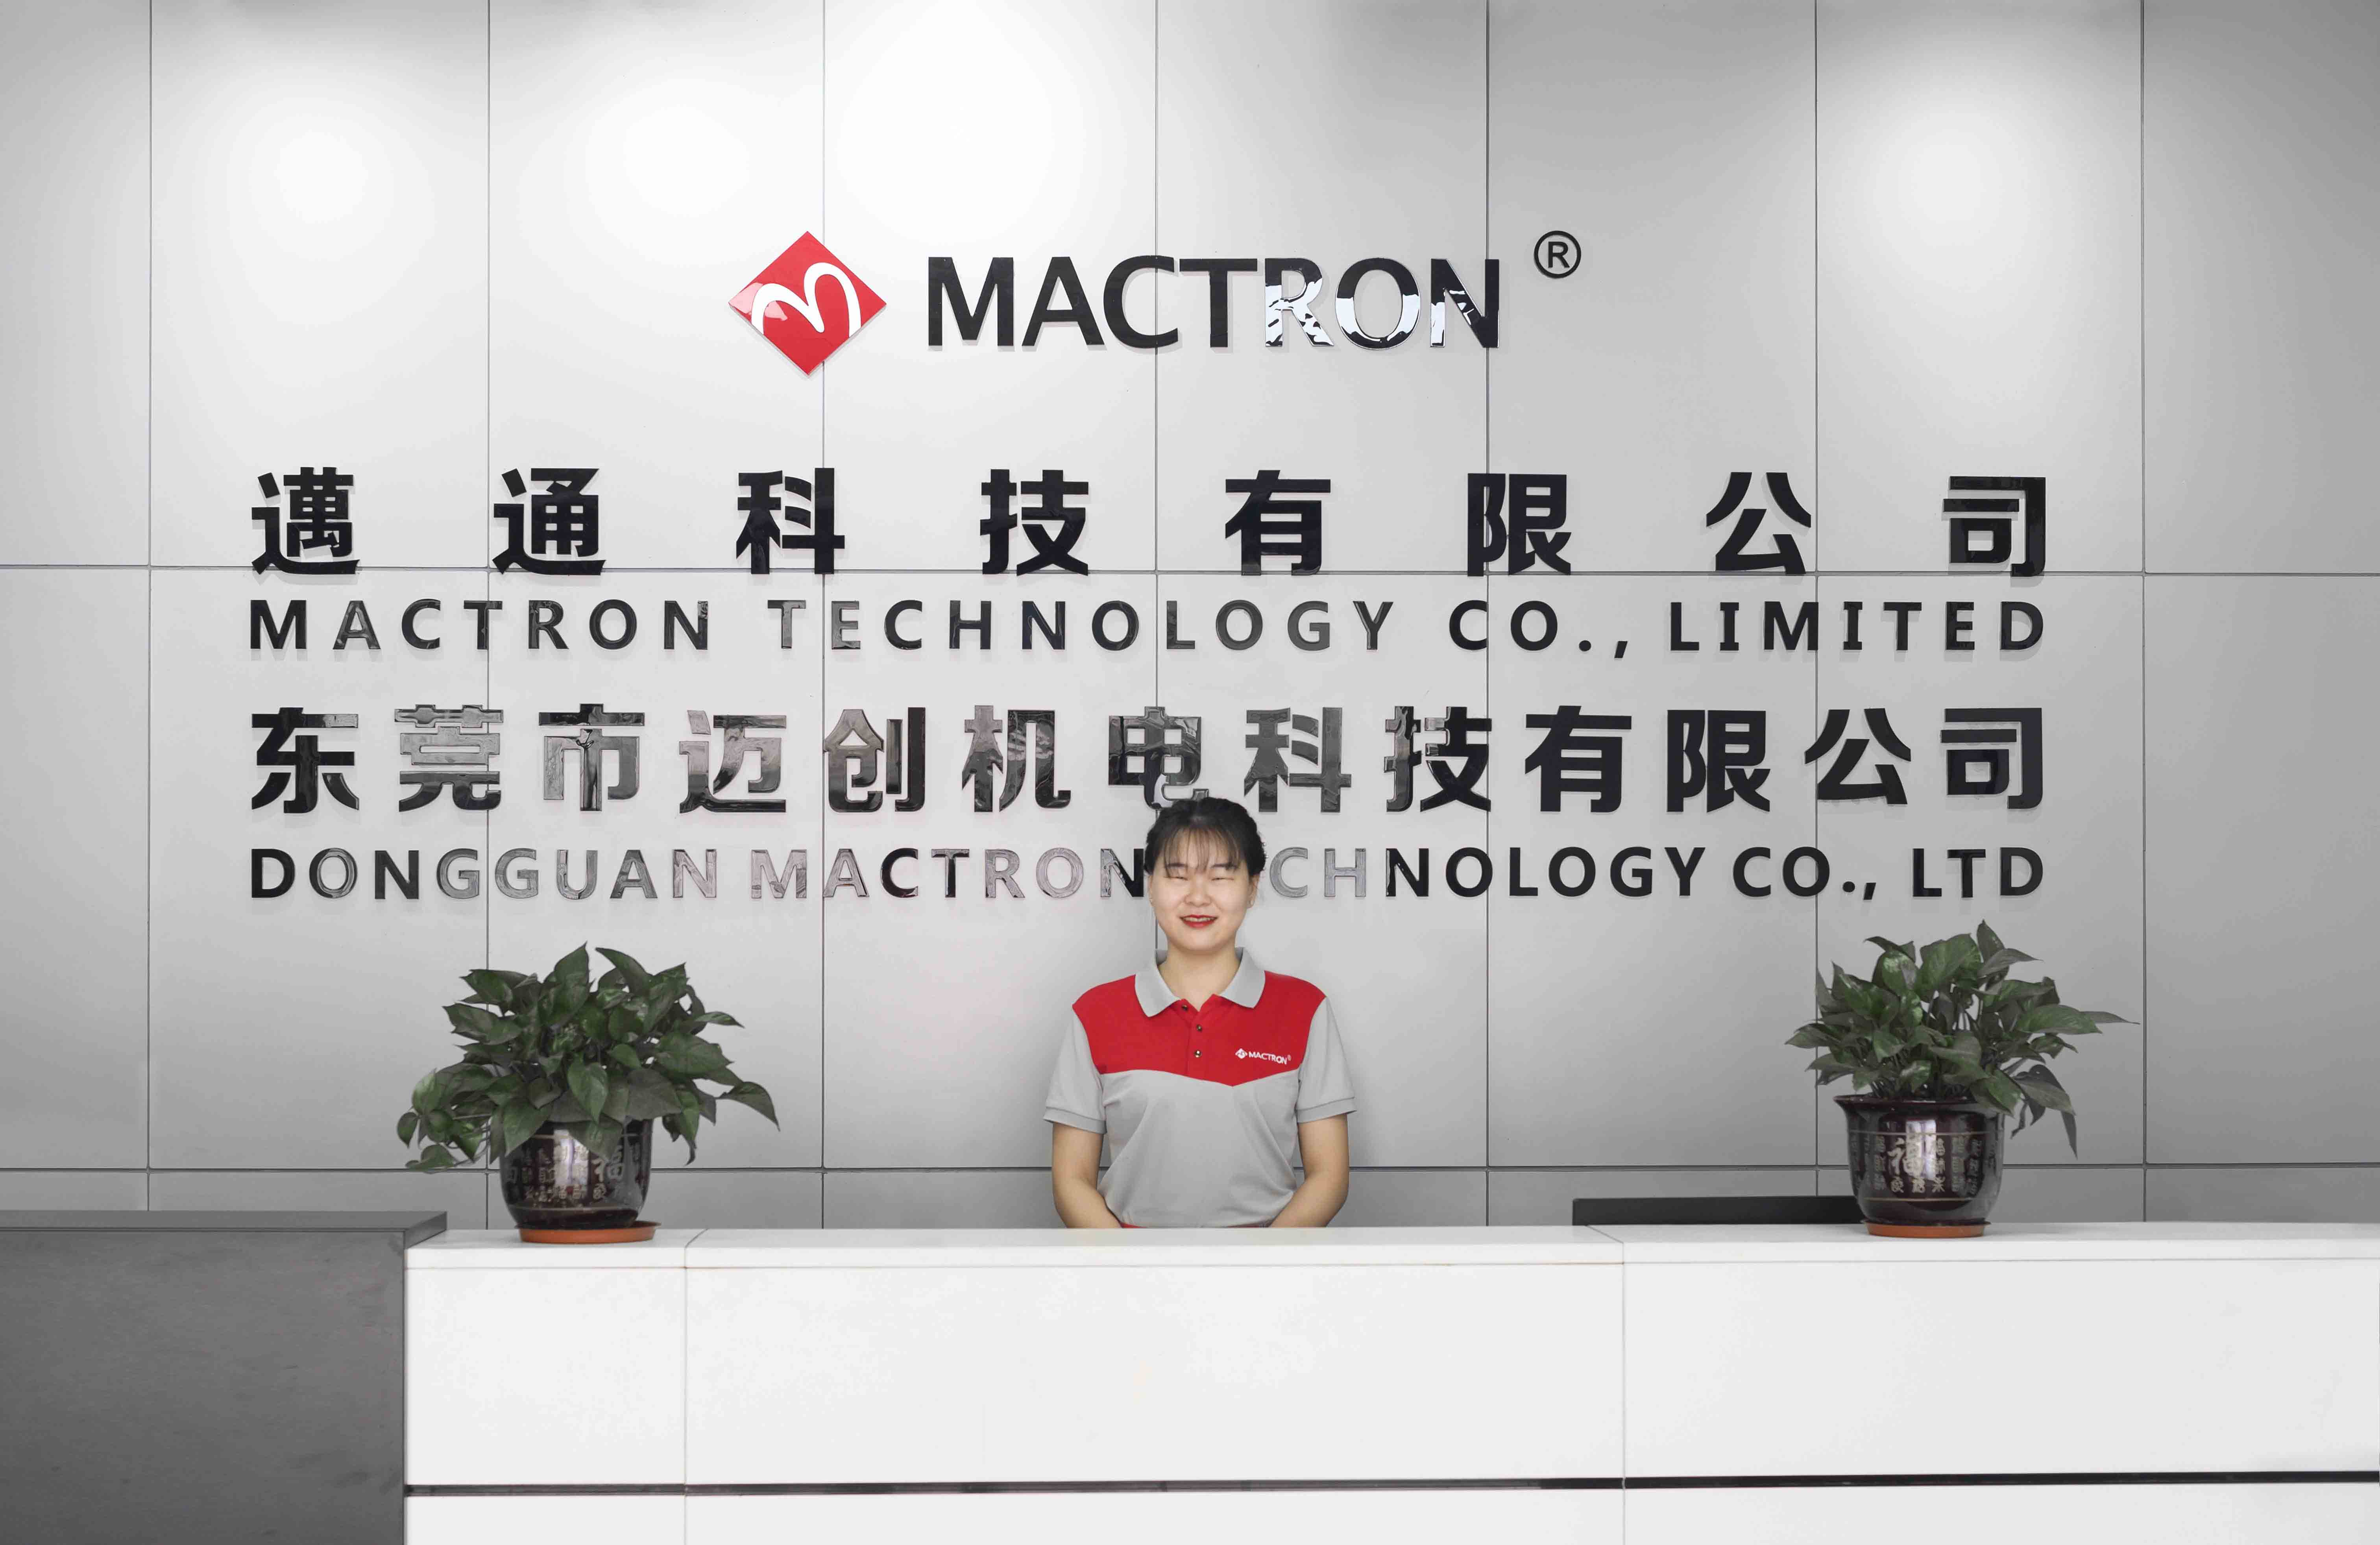 Mactron Tech Company View